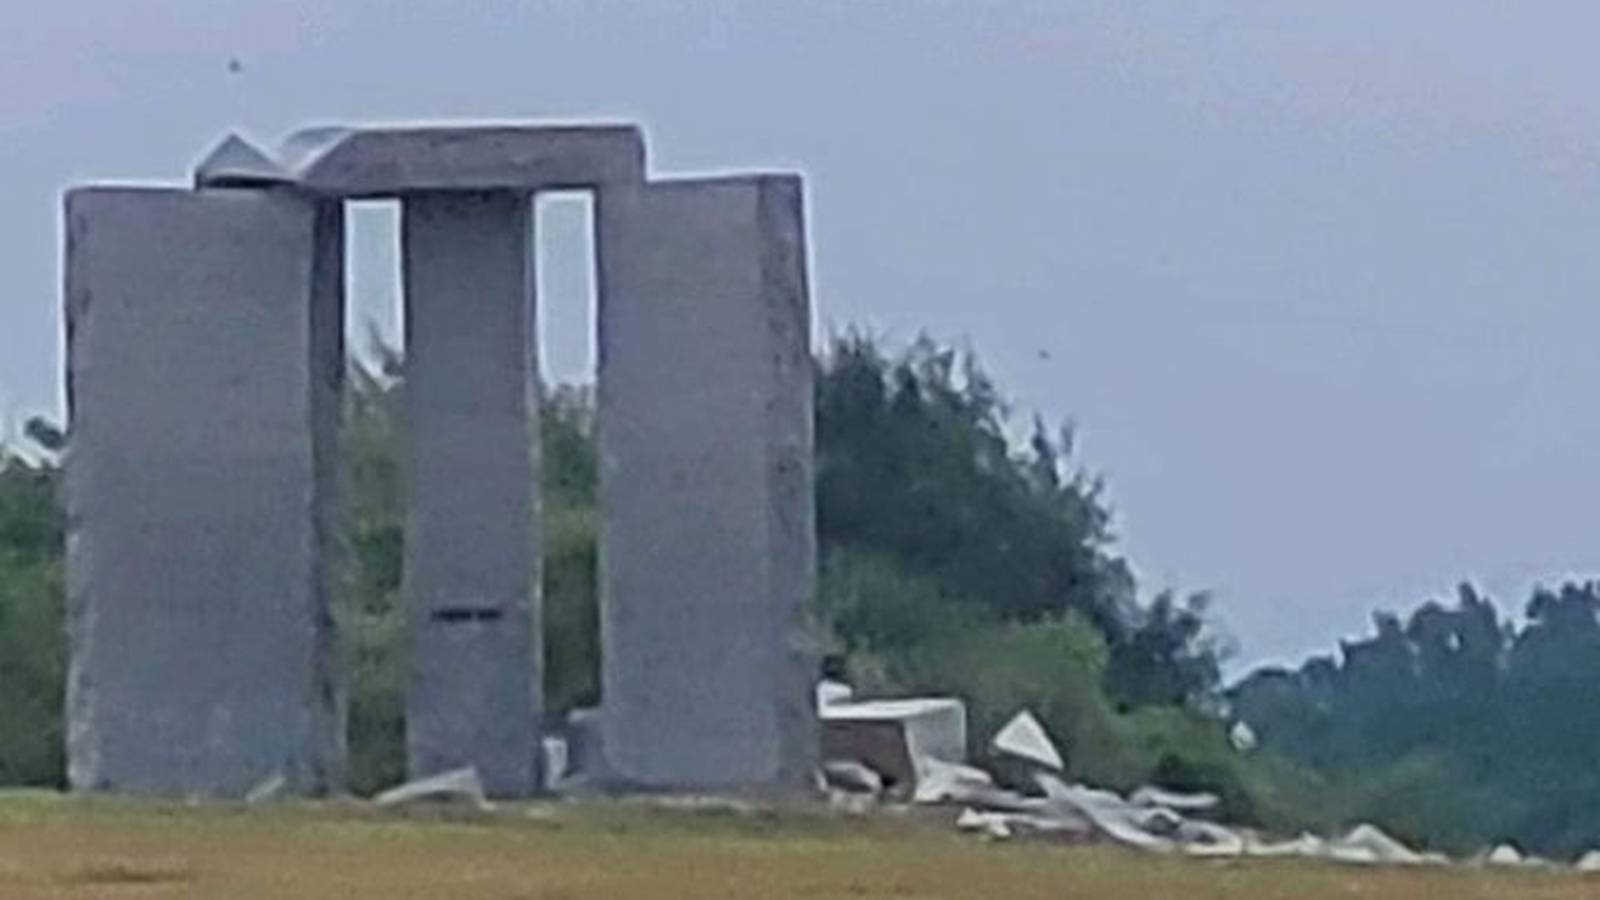 ΜΠΟΥΜ!!! – Έκρηξη σκίζει κυριολεκτικά το μνημείο “ερήμωσης του πληθυσμού” της ελίτ, τους «Κατευθυντήριους Λίθους της Γεωργίας (Τζώρτζιας)» που έχουν ελληνικές επιγραφές πάνω τους!!!